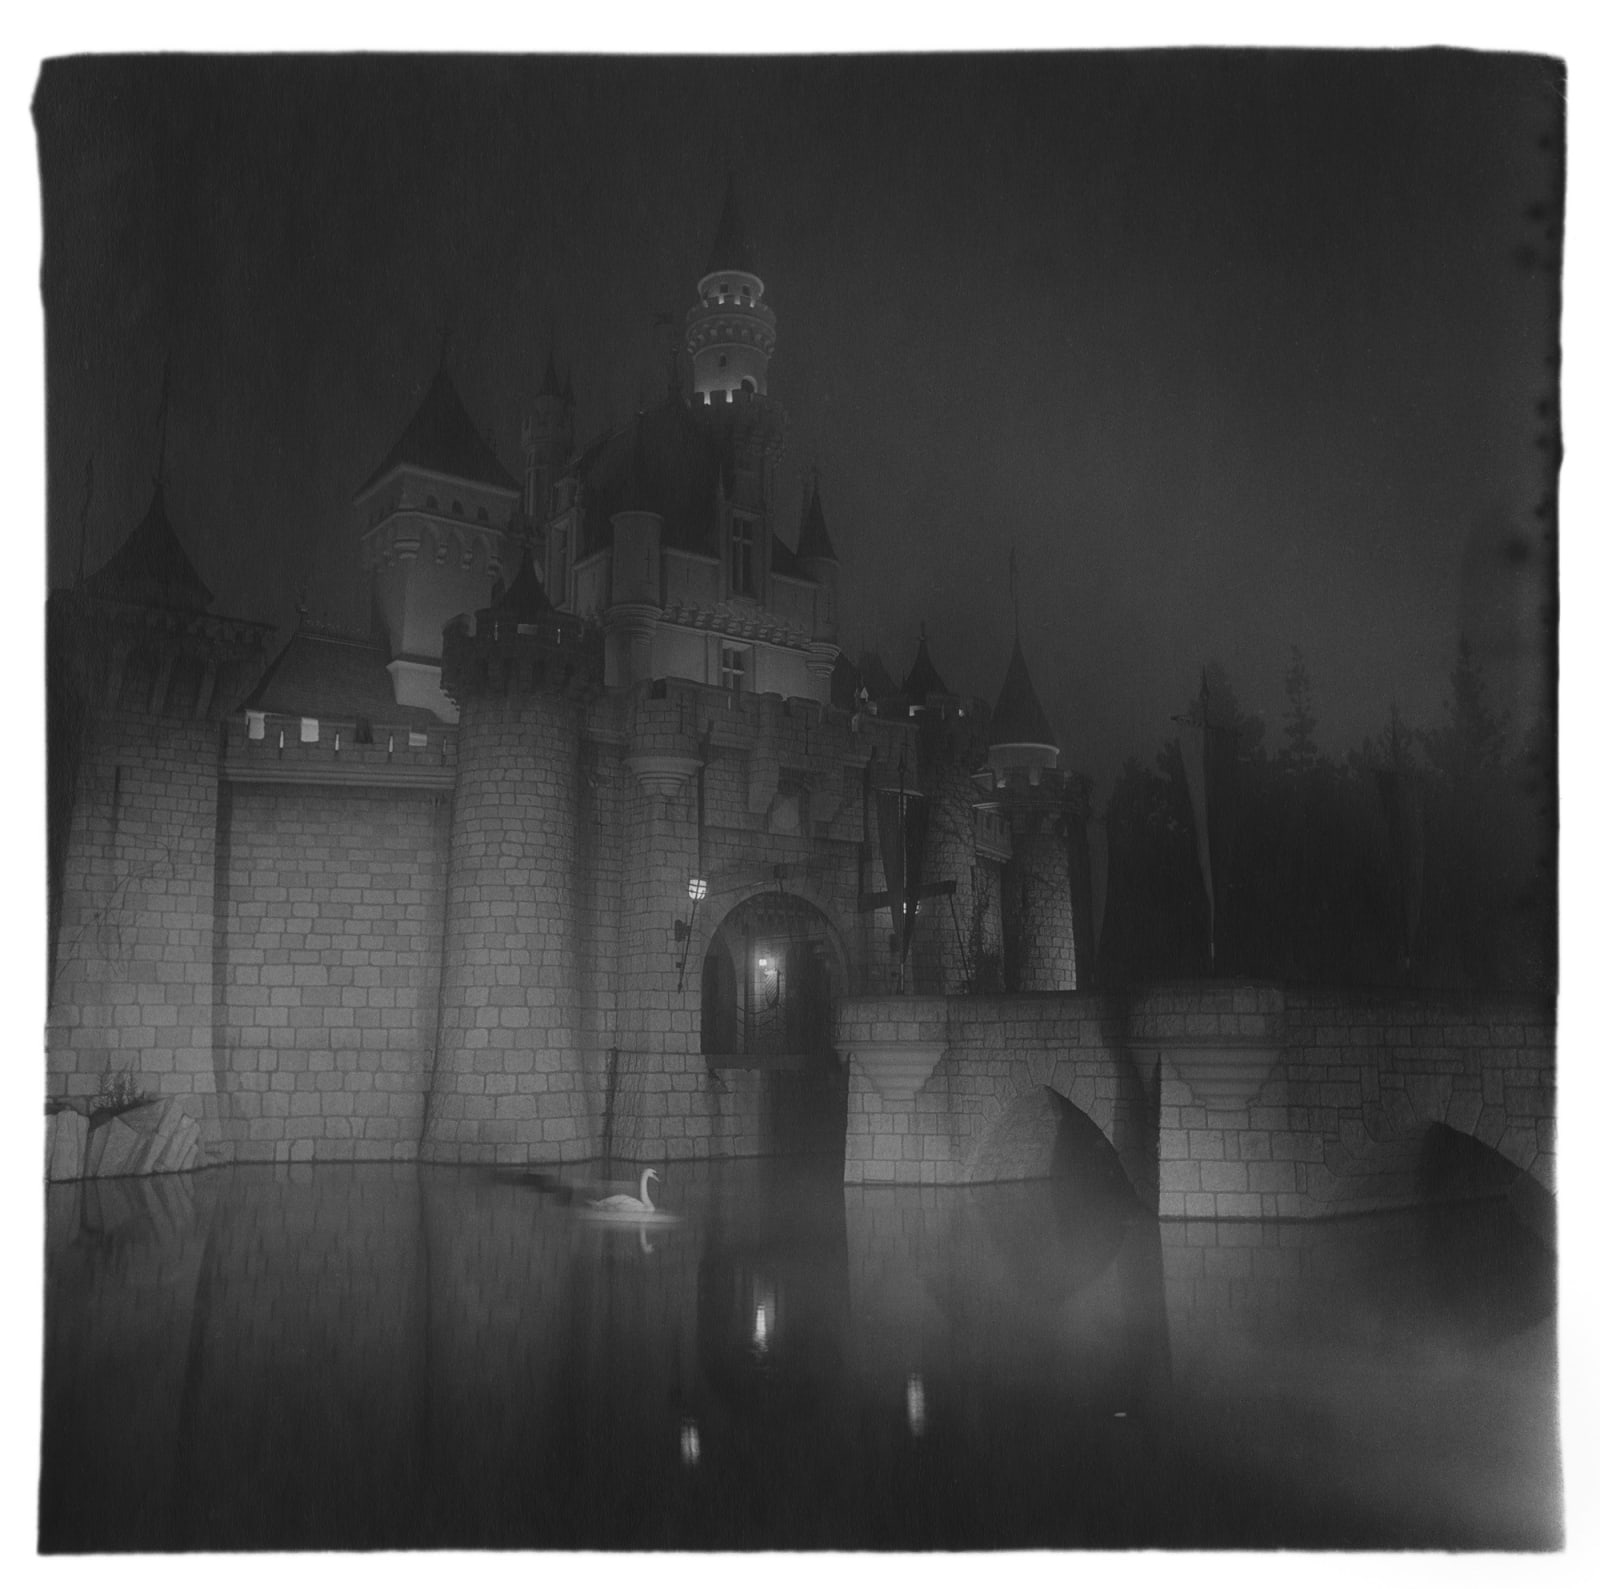 Diane Arbus, A Castle in Disneyland, California, 1962